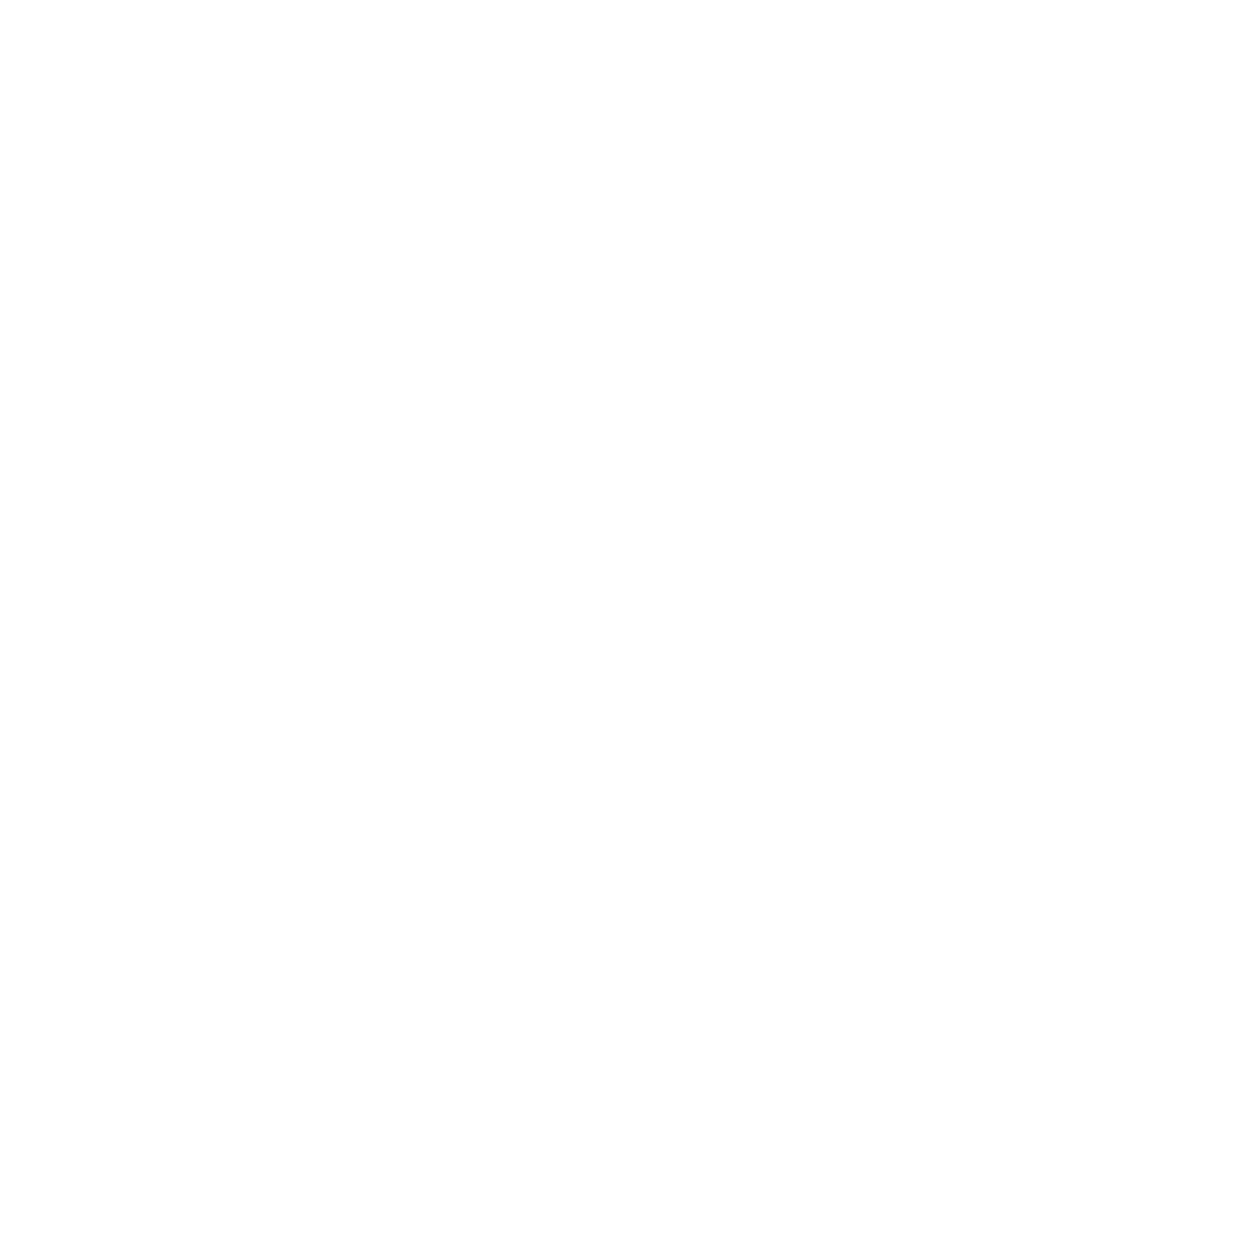 Metrobank-01